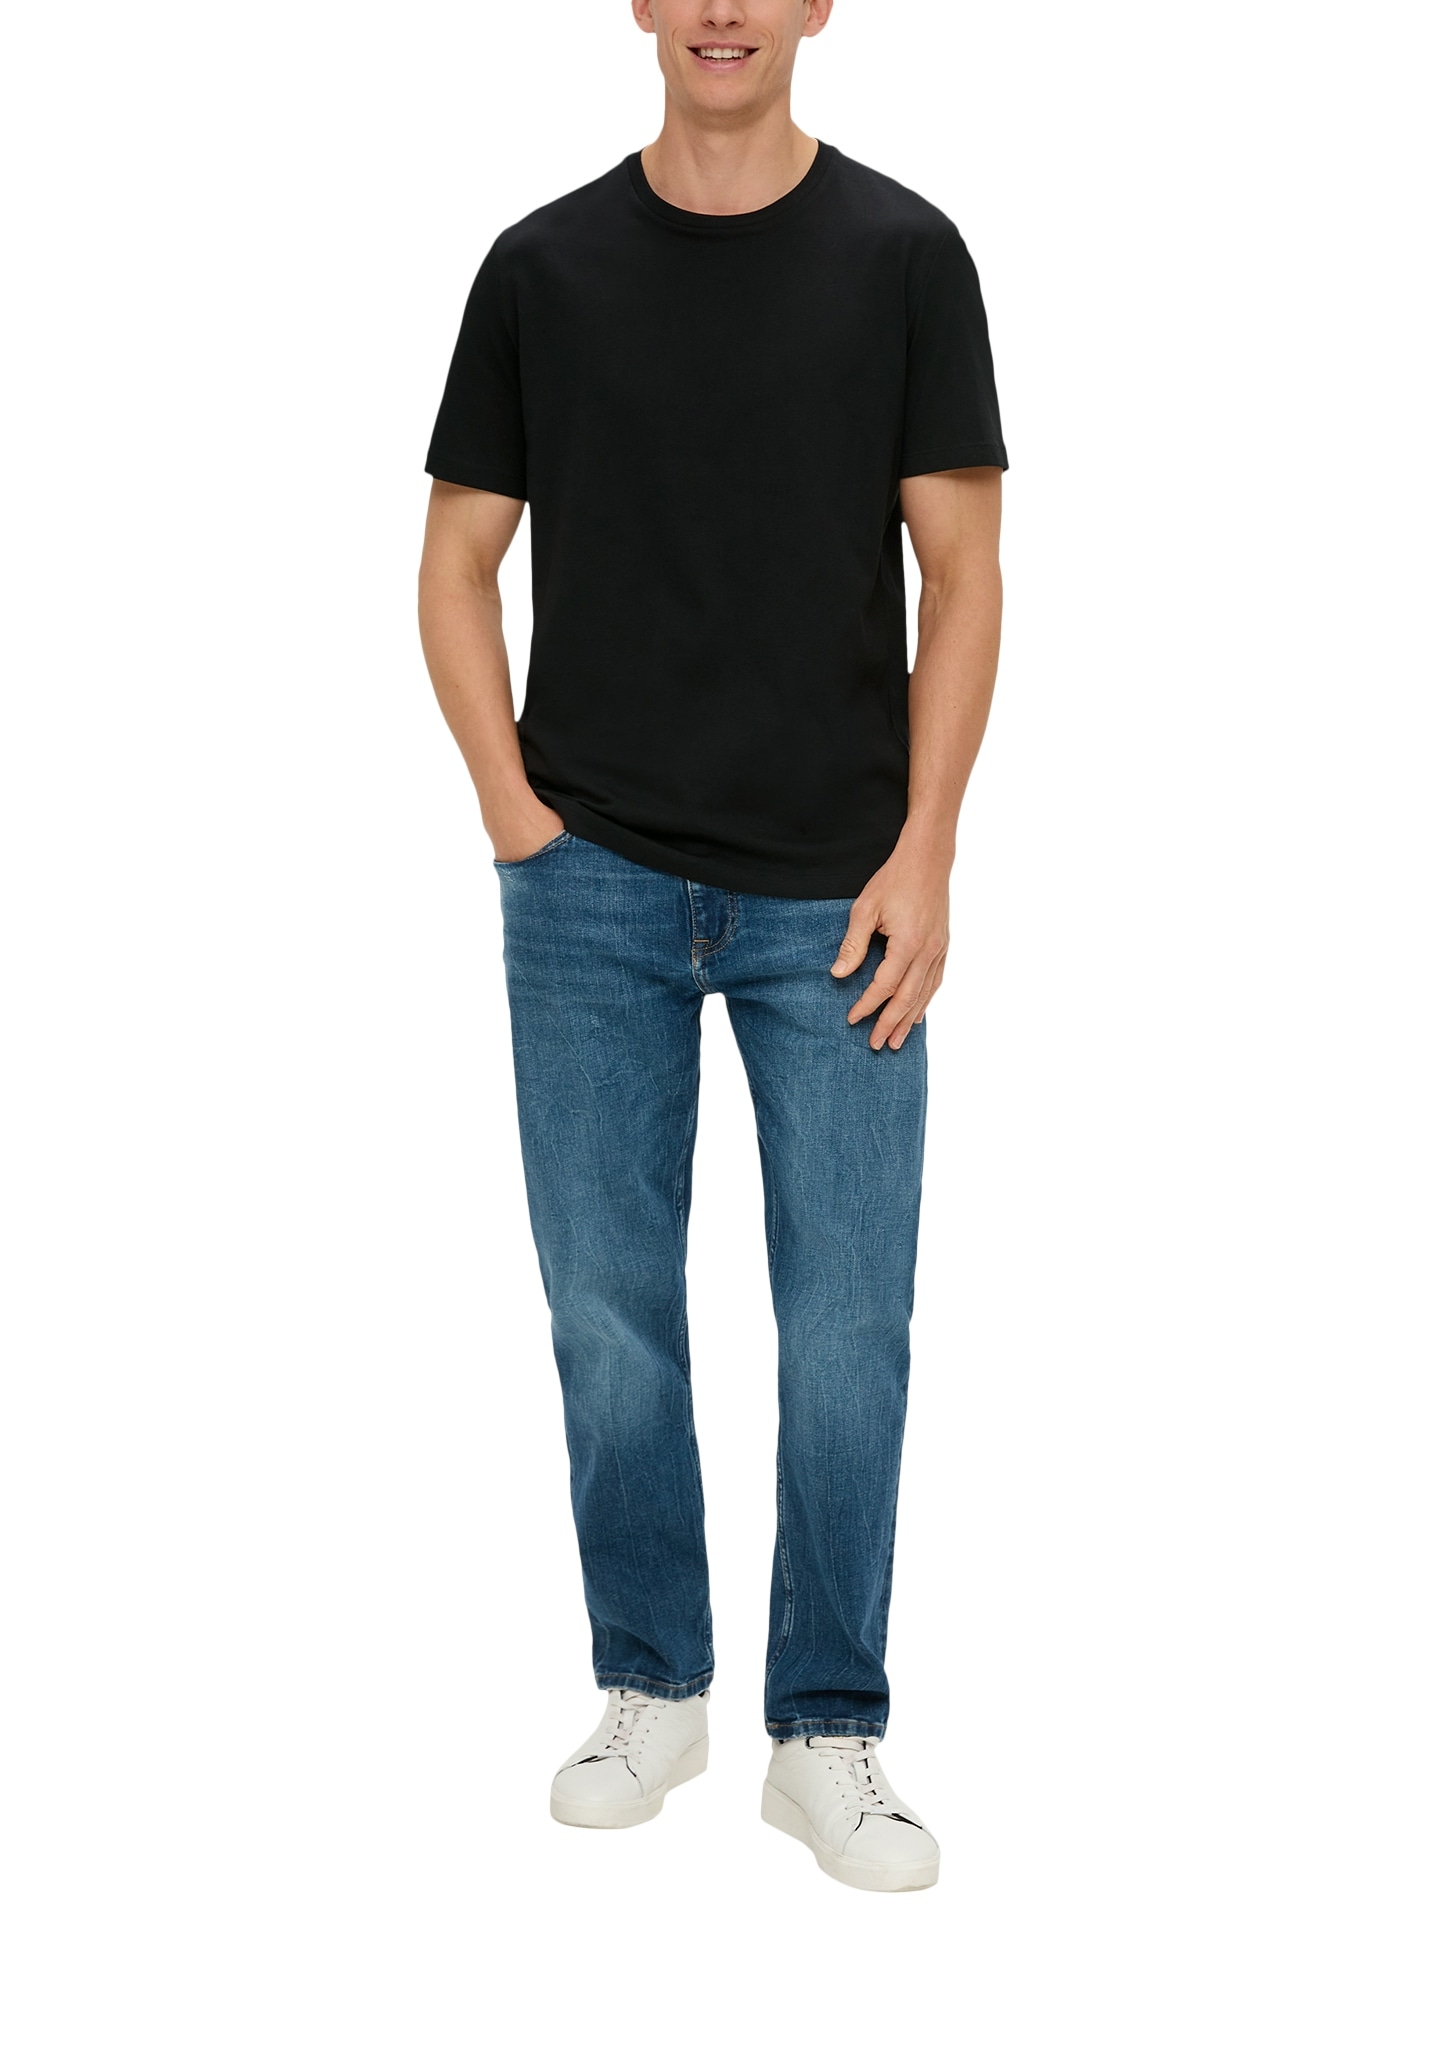 s.Oliver T-Shirt, unifarben - im Doppelpack